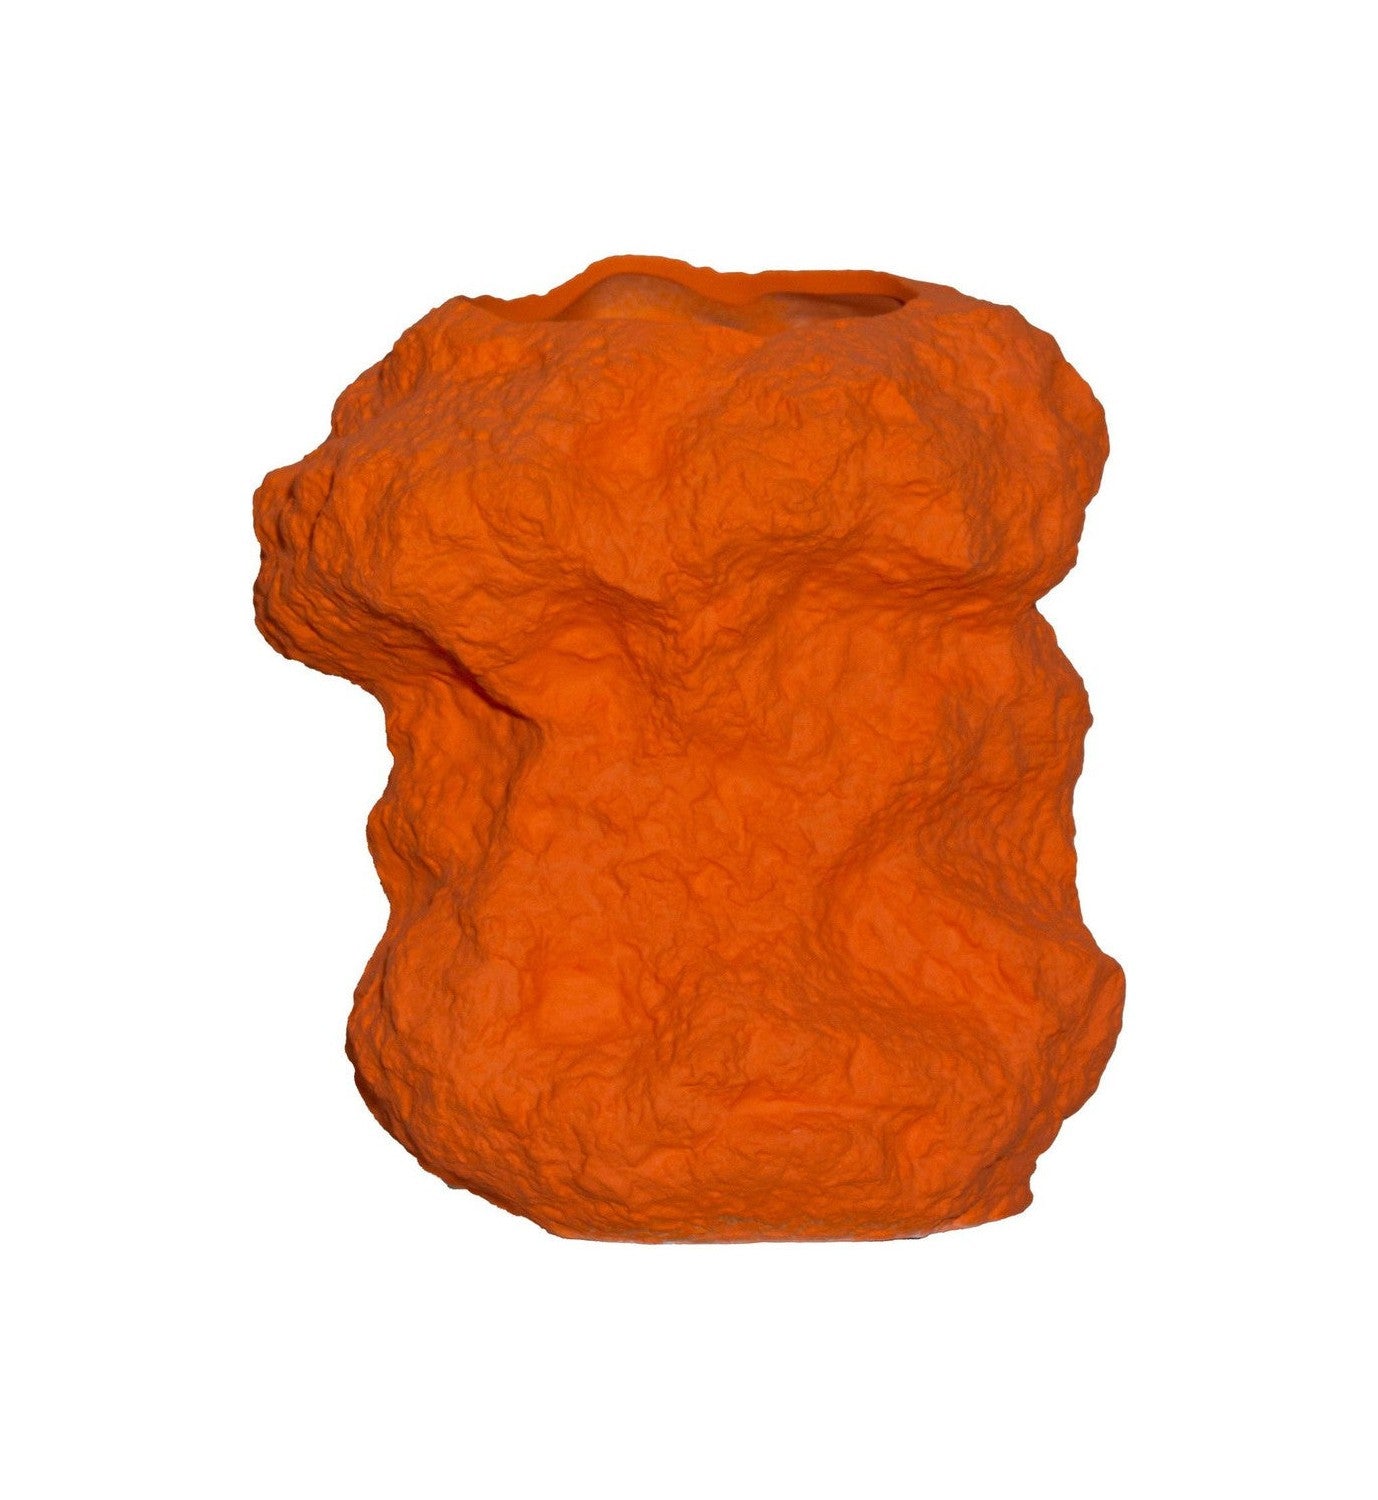 现代设计岩石像花瓶一样在橙色陶瓷中，chu32or